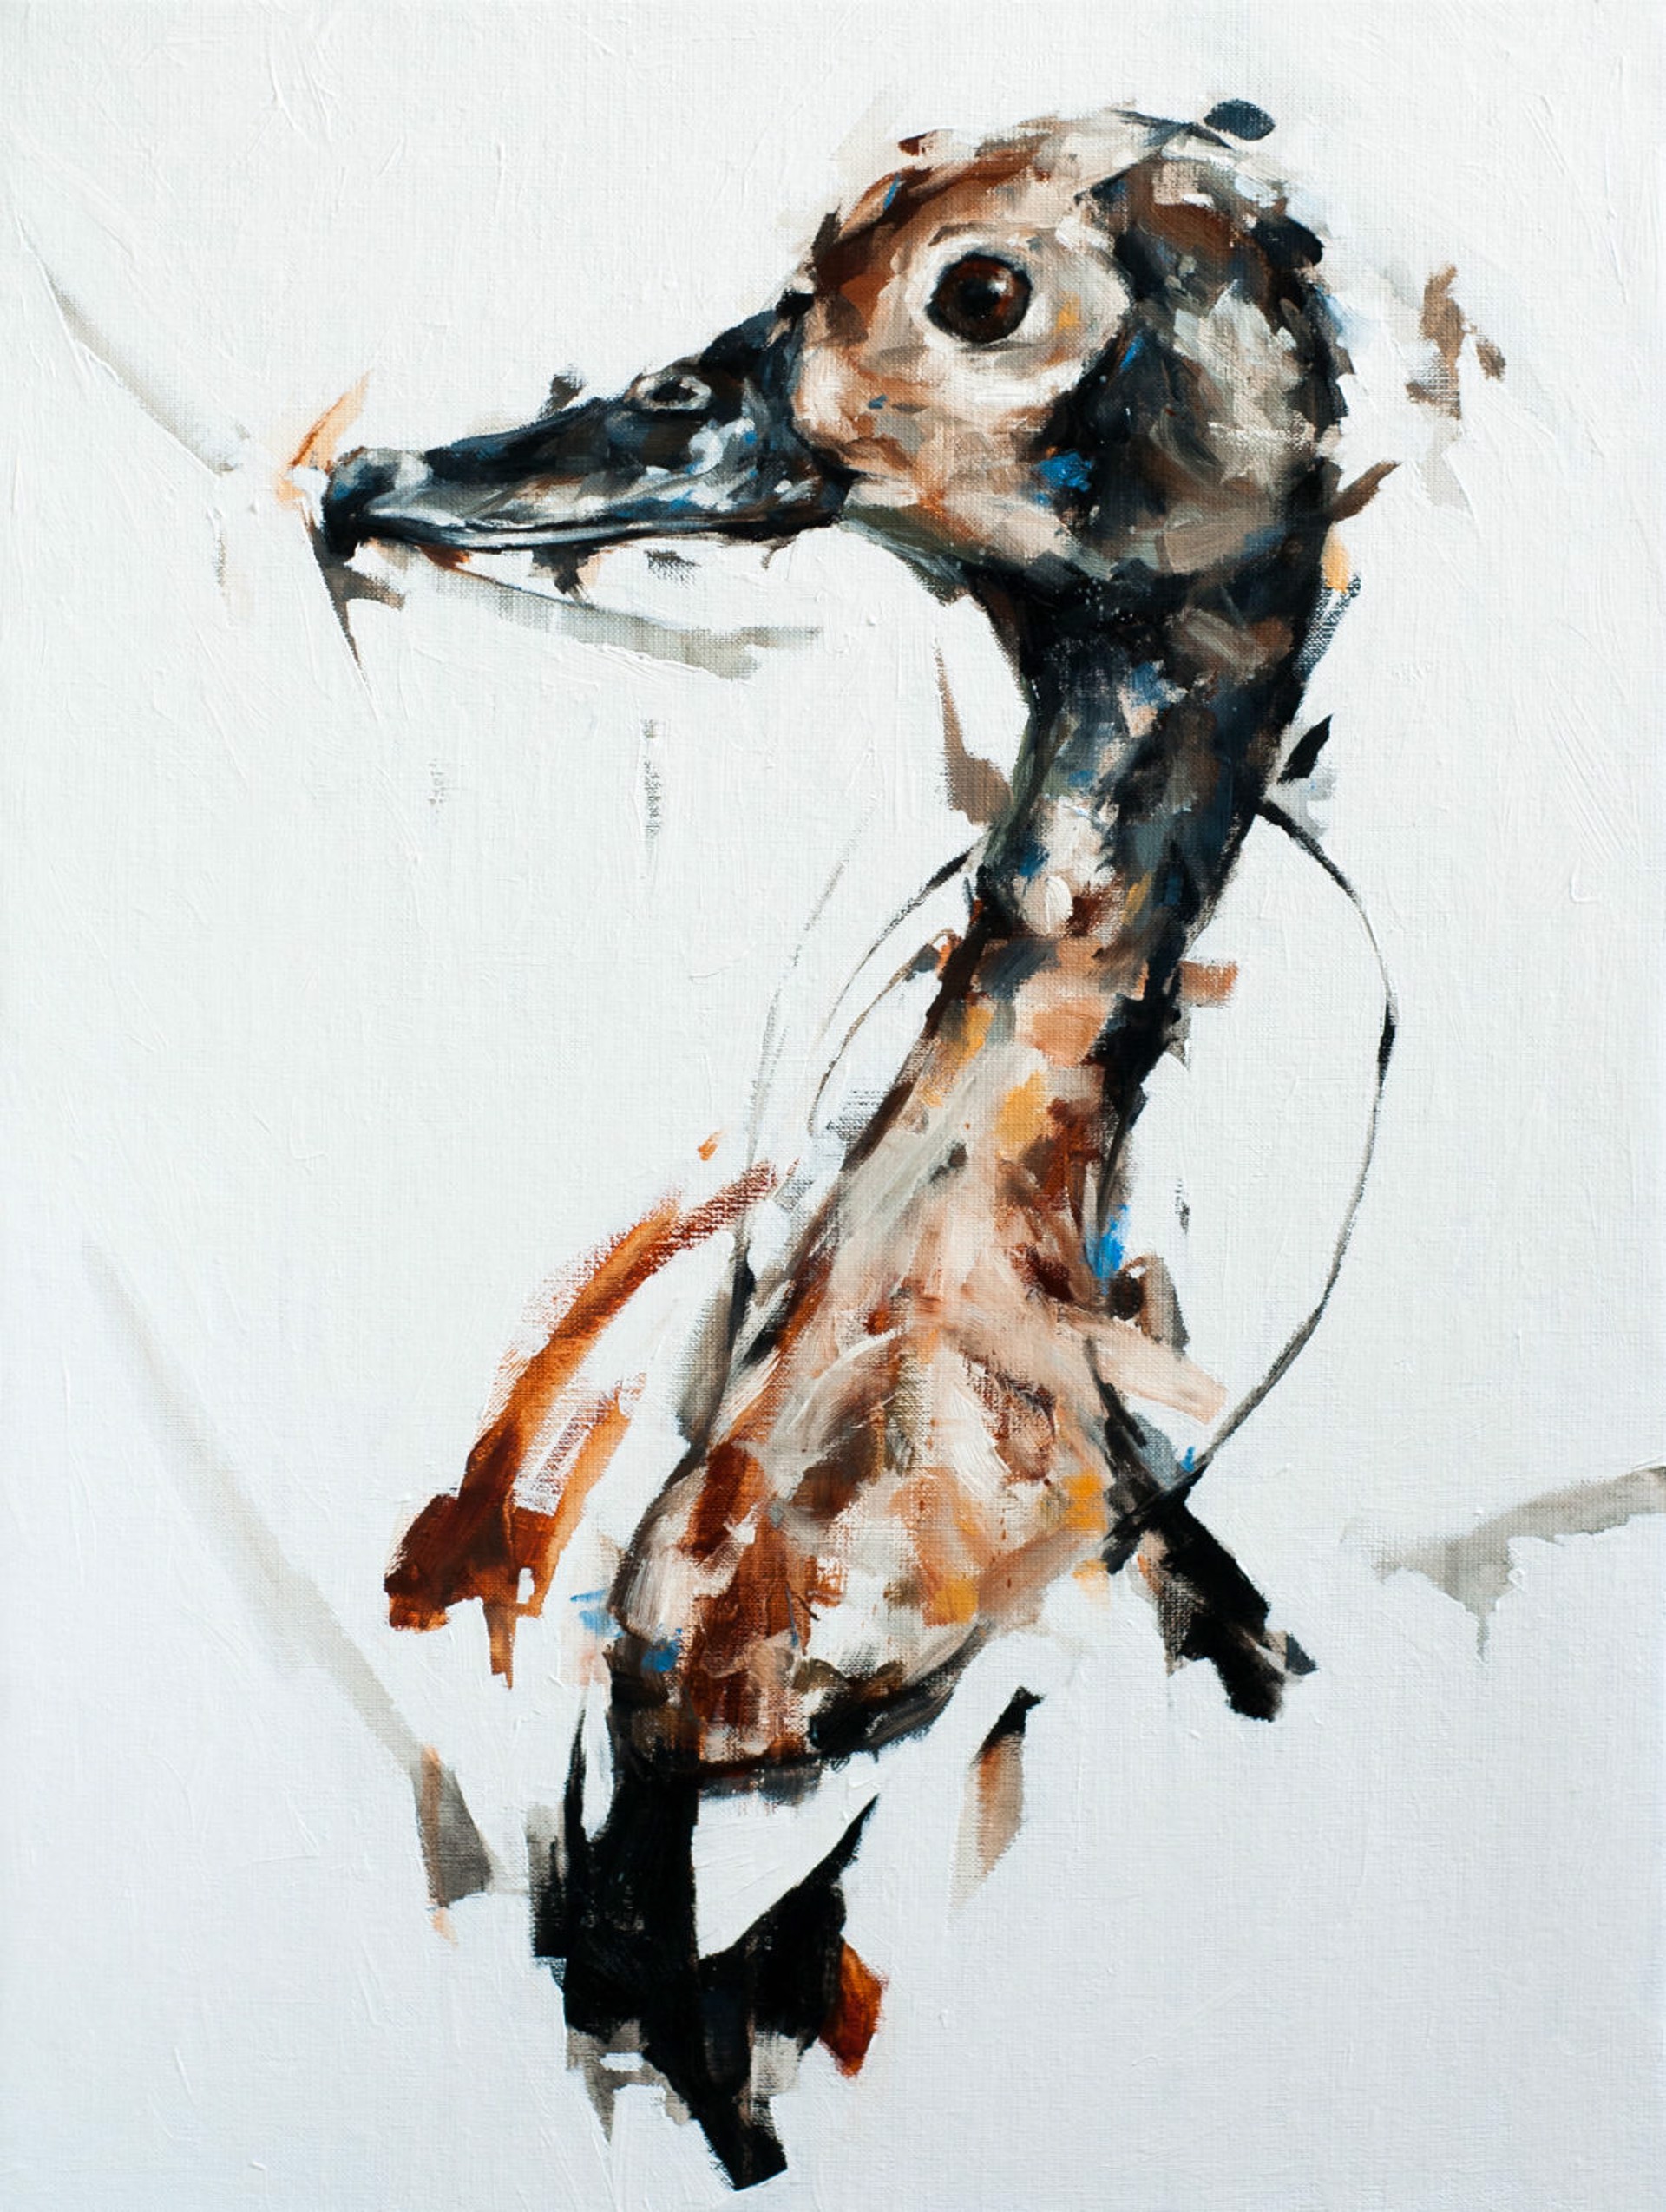 Duck by Thibault Jandot